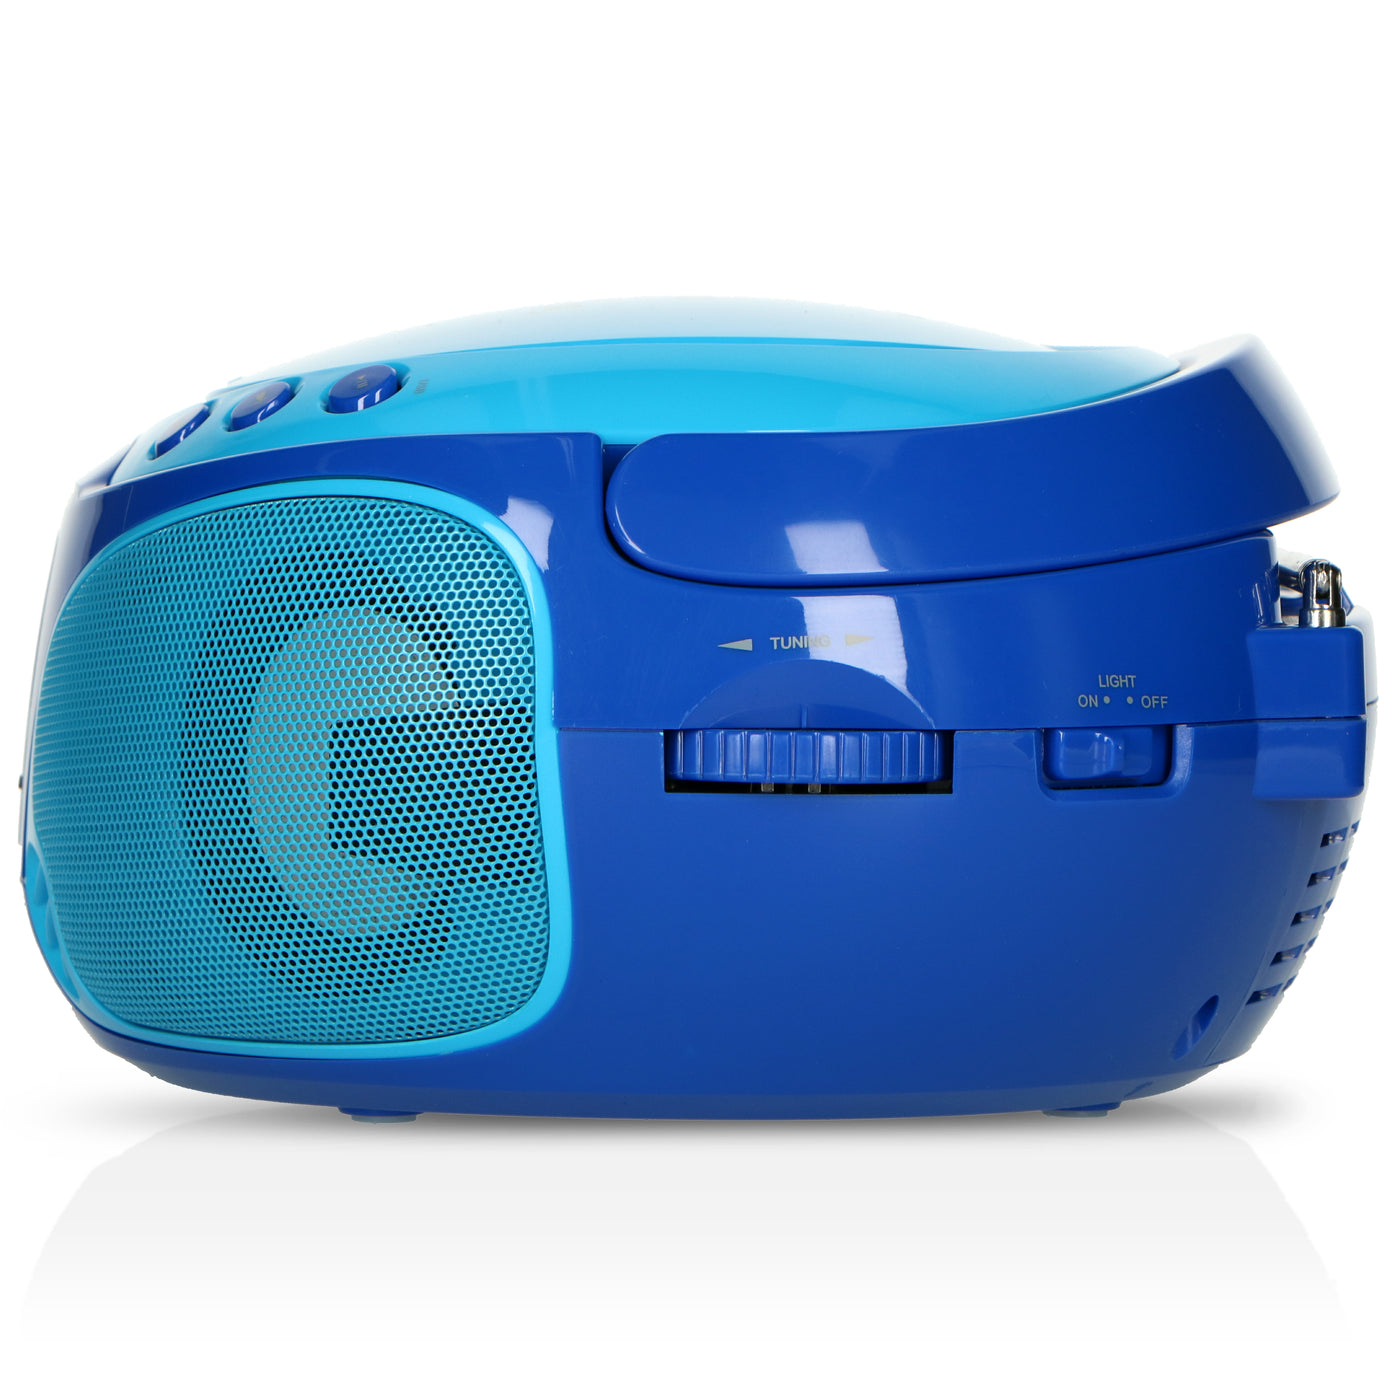 LENCO SCD-650BU - Przenośne radio FM CD/MP3/USB Mikrofon i efekty świetlne - Niebieski